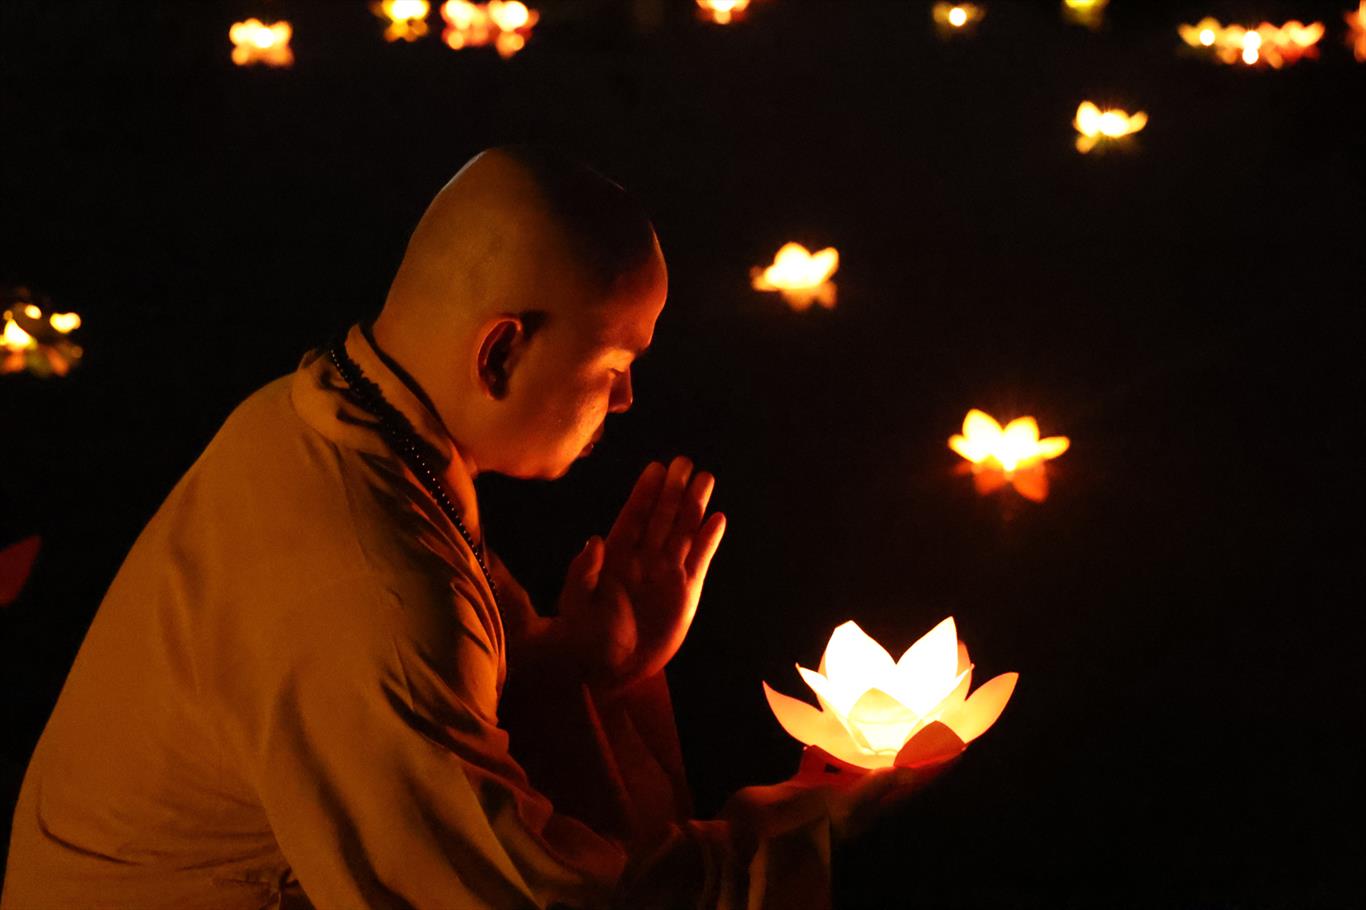 Khai mạc pháp hội Dược Sư và đại lễ cầu an đầu năm tại chùa Ân Thọ